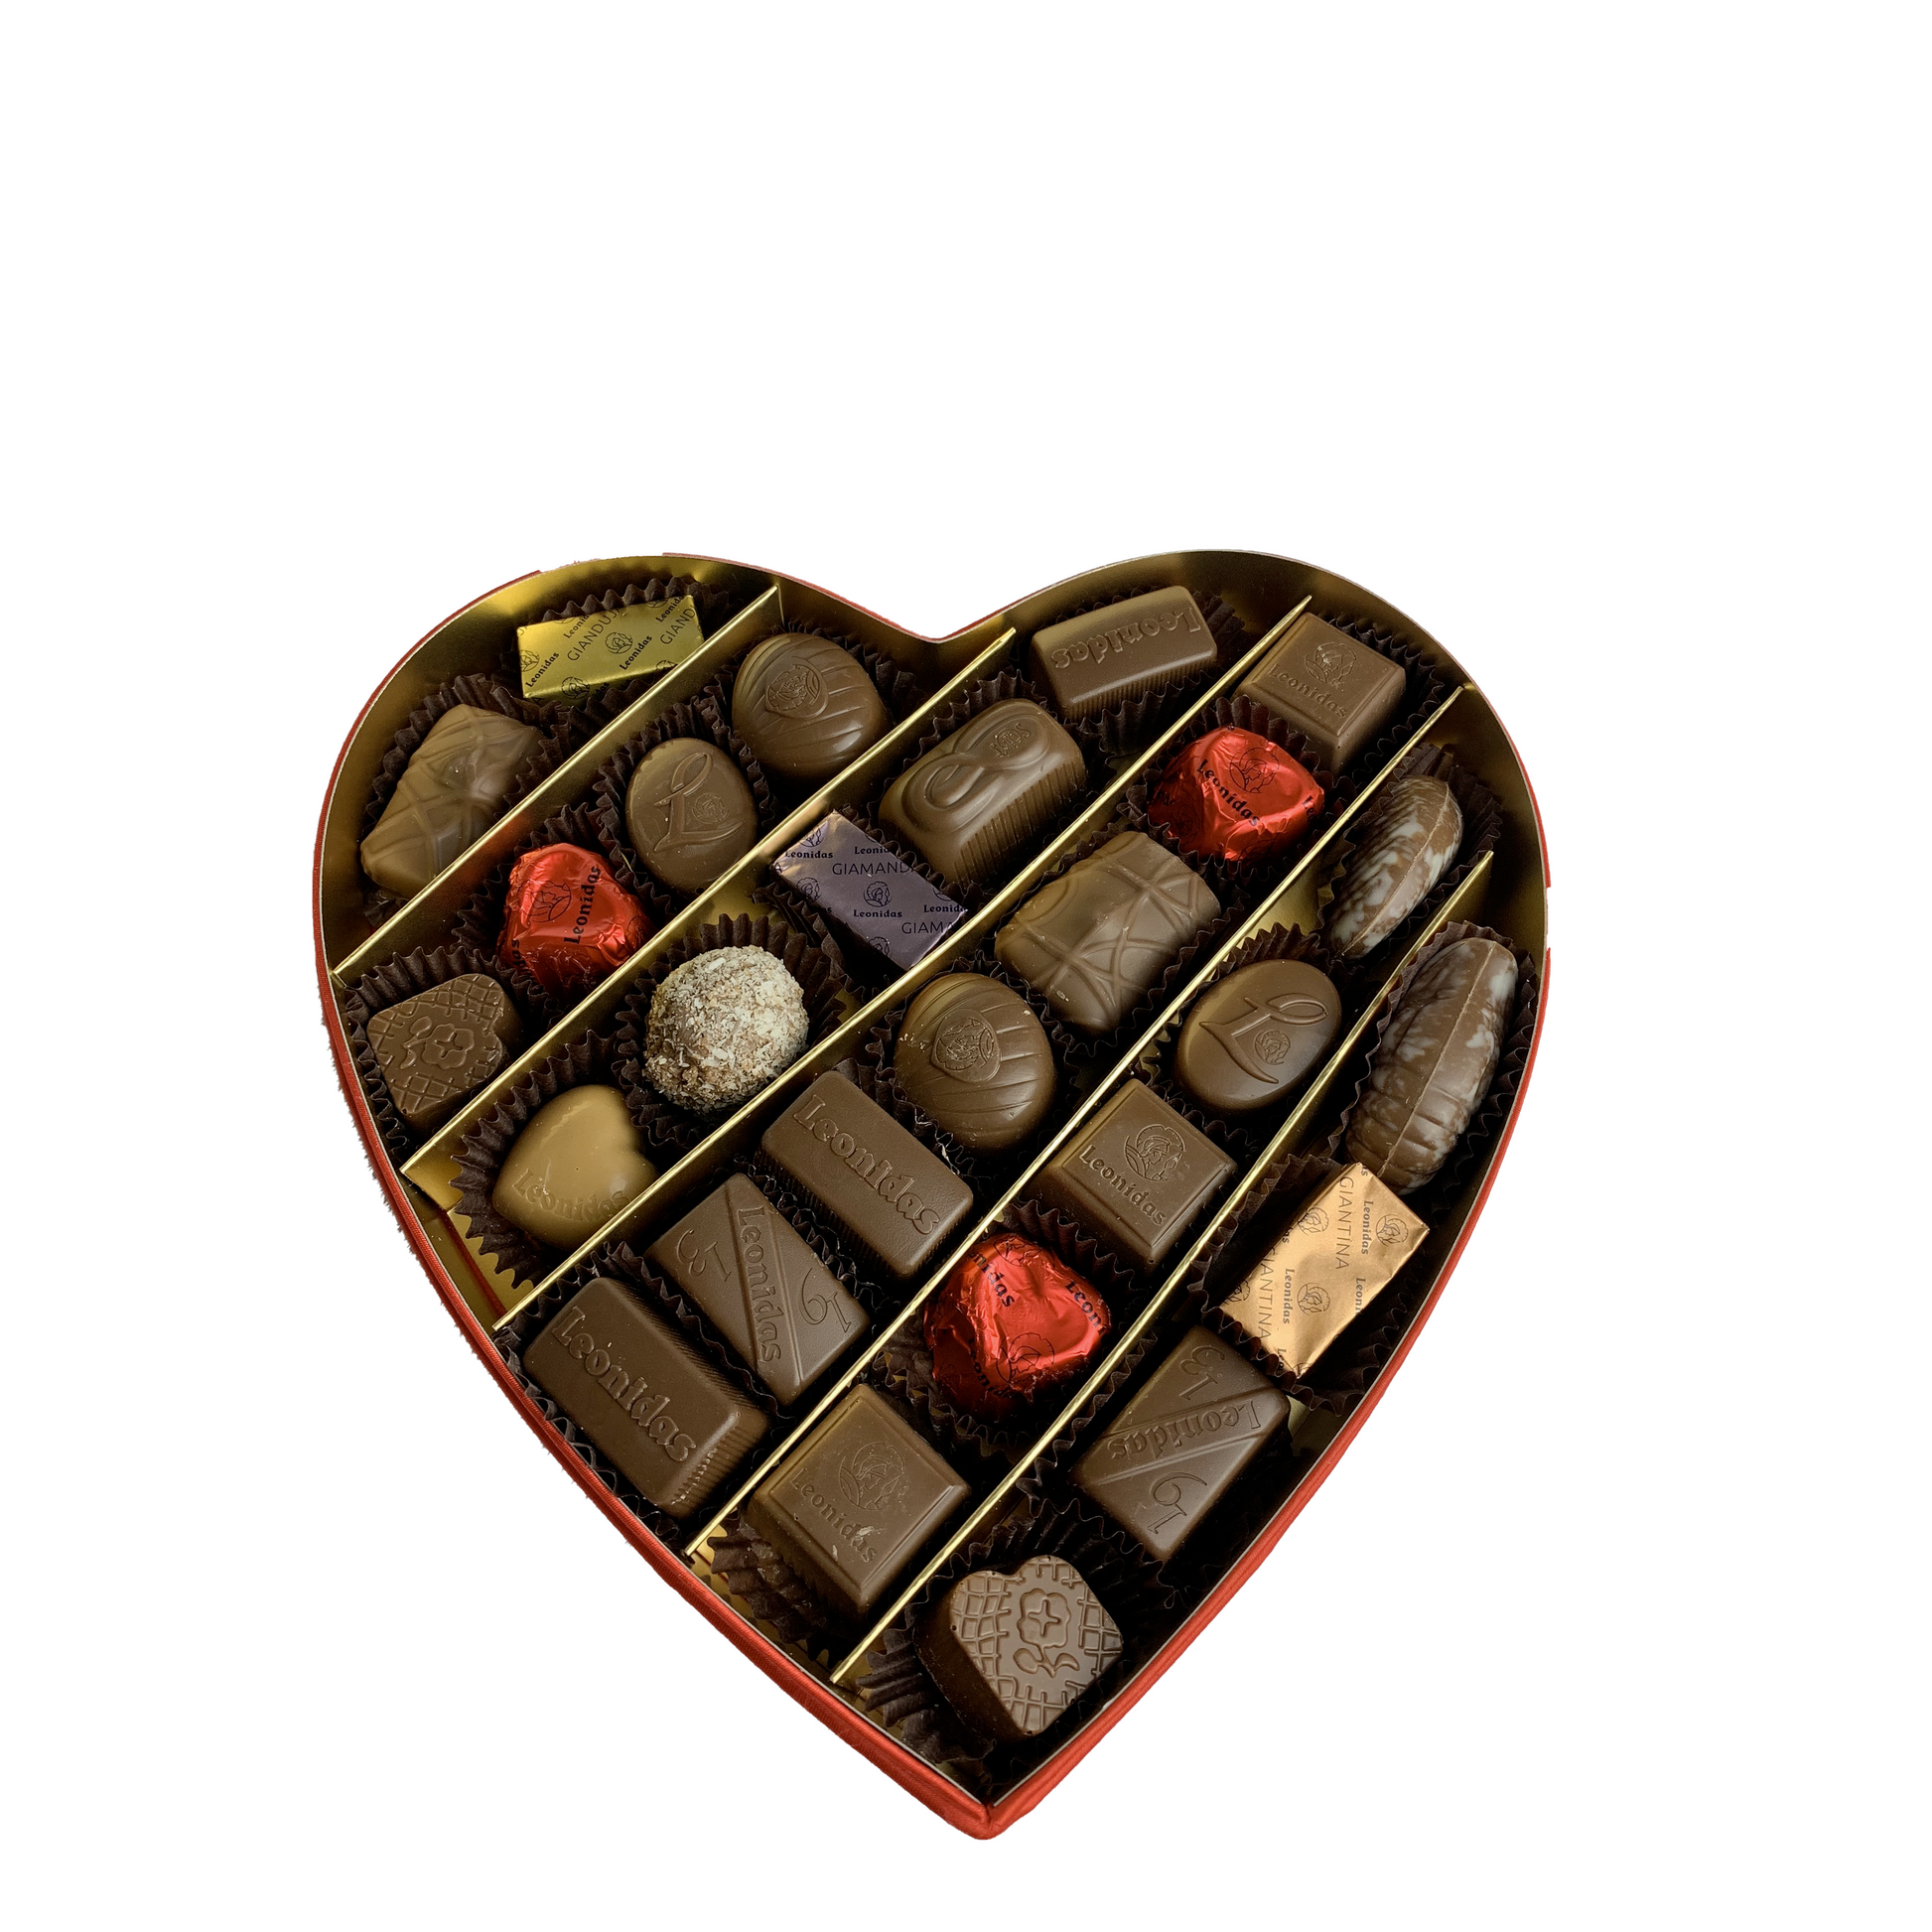 Cœurs en chocolat à offrir pour la Saint-Valentin : cadeau de luxe